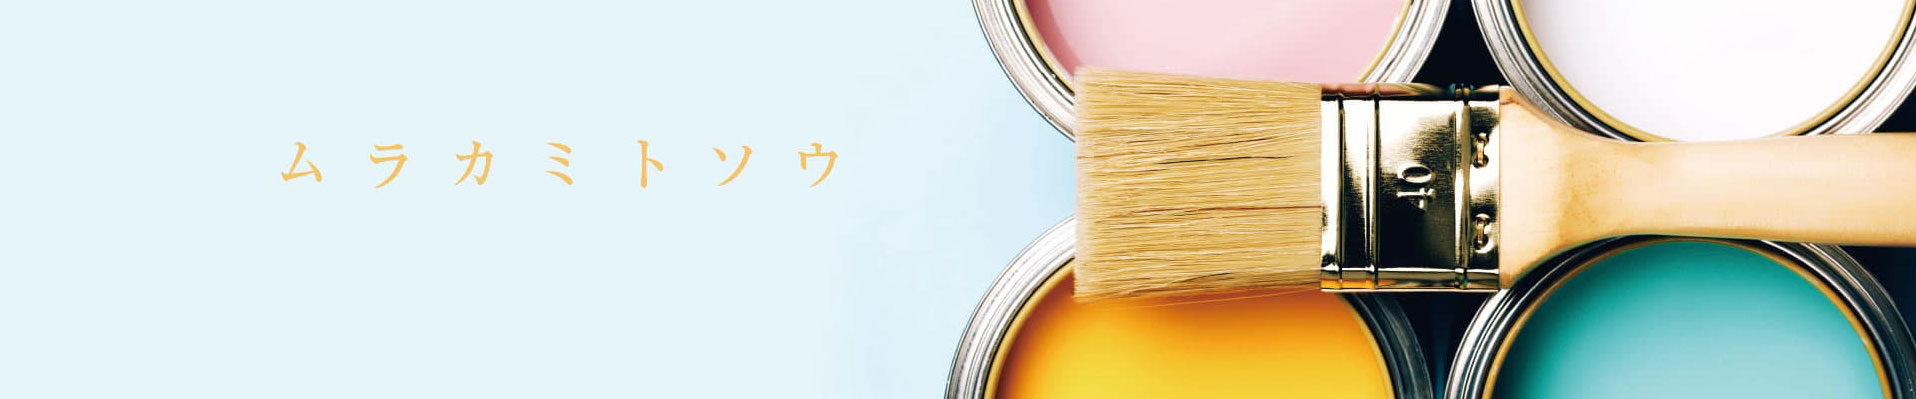 広島の職人直営店『村上塗装』への塗装工事に関するお問い合わせ・ご相談